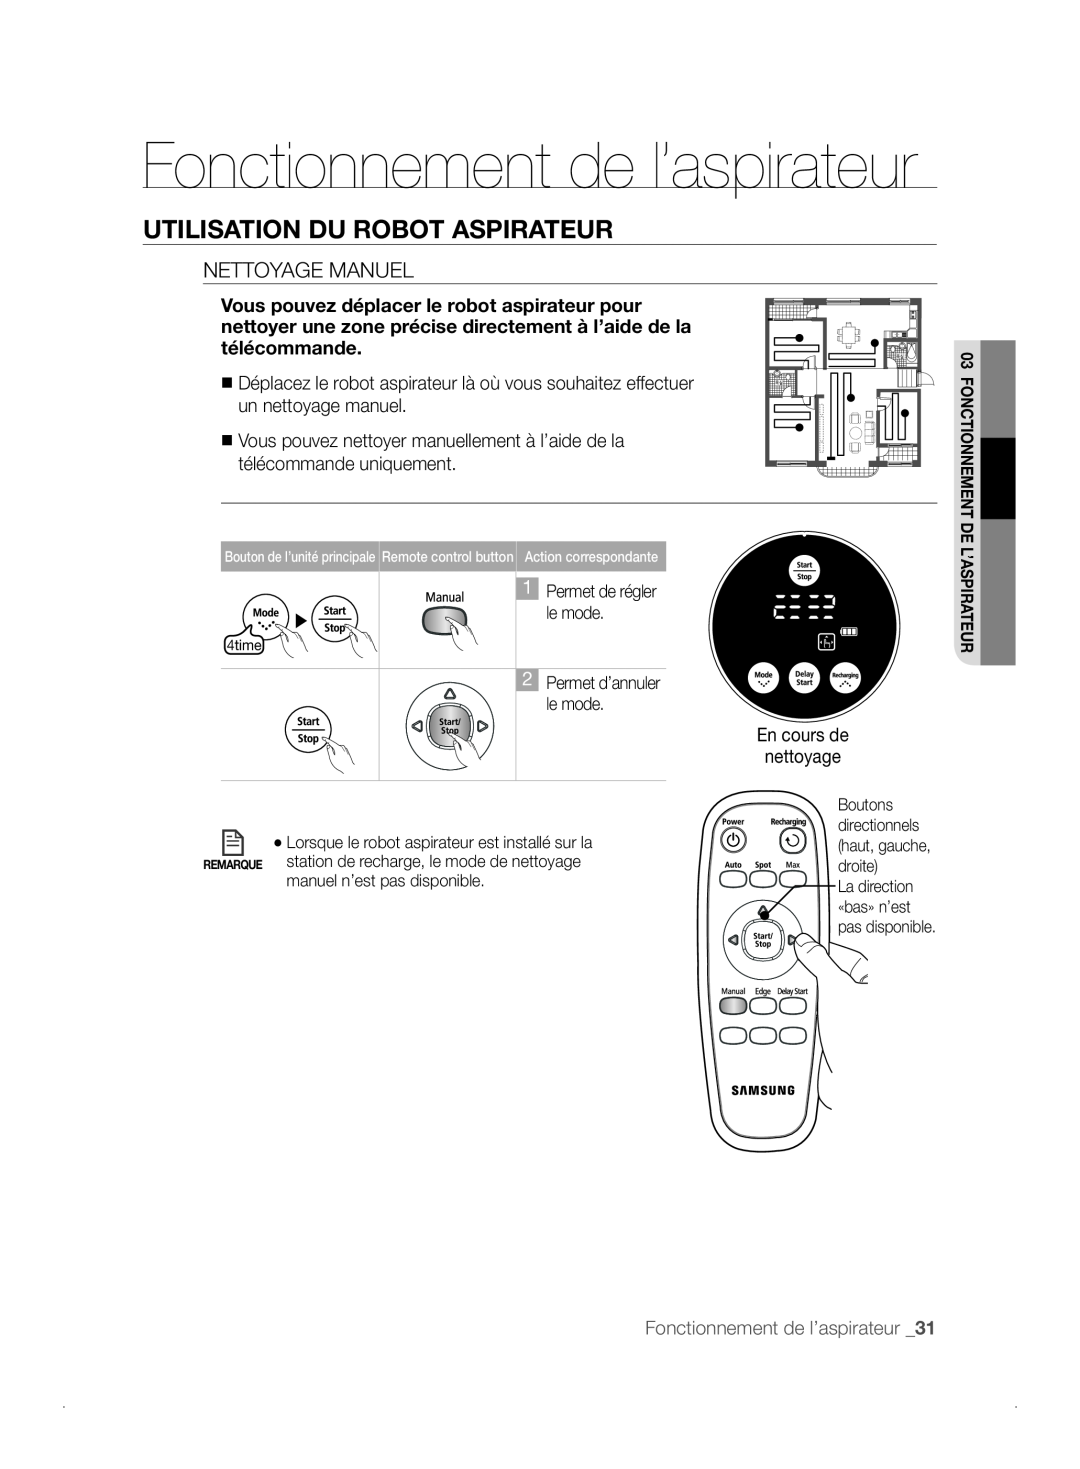 Samsung VCR8841T3B/XEF manual Fonctionnement de l’aspirateur, Utilisation Du Robot Aspirateur, Nettoyage Manuel 